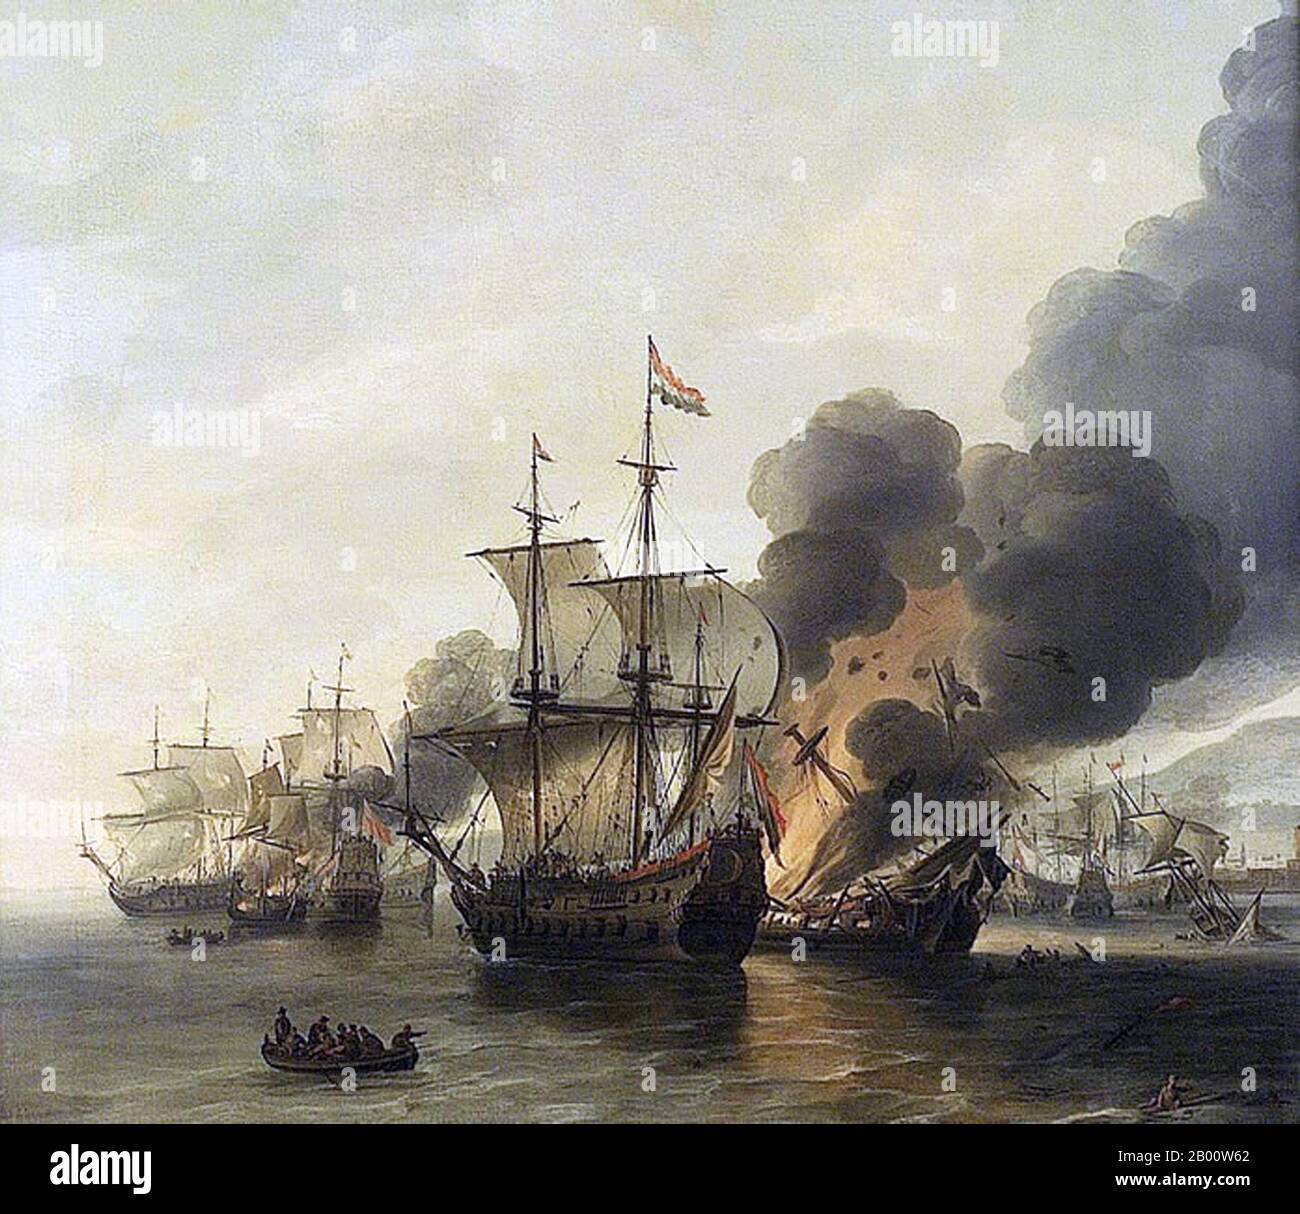 Maritime: 'La bataille de Leghorn, 4 mars 1653'. Peinture à l'huile sur toile par Willem Hermansz van Diest (c. 1600-1678), milieu du xviie siècle. La bataille navale de Leghorn (l'appel néerlandais la rencontre par le nom italien Livourne) a eu lieu le 14 mars (4 mars Old style) 1653, pendant la première guerre anglo-hollandaise, près de Leghorn (Livourne), Italie. C'était la victoire d'une flotte hollandaise sous le Commodore Johan van Galen sur un escadron anglais sous le capitaine Henry Appleton. Par la suite, une flotte anglaise sous la direction du capitaine Richard Badiley, que Appleton avait tenté de rejoindre, est venue mais a été surnumérotée et a fui. Banque D'Images